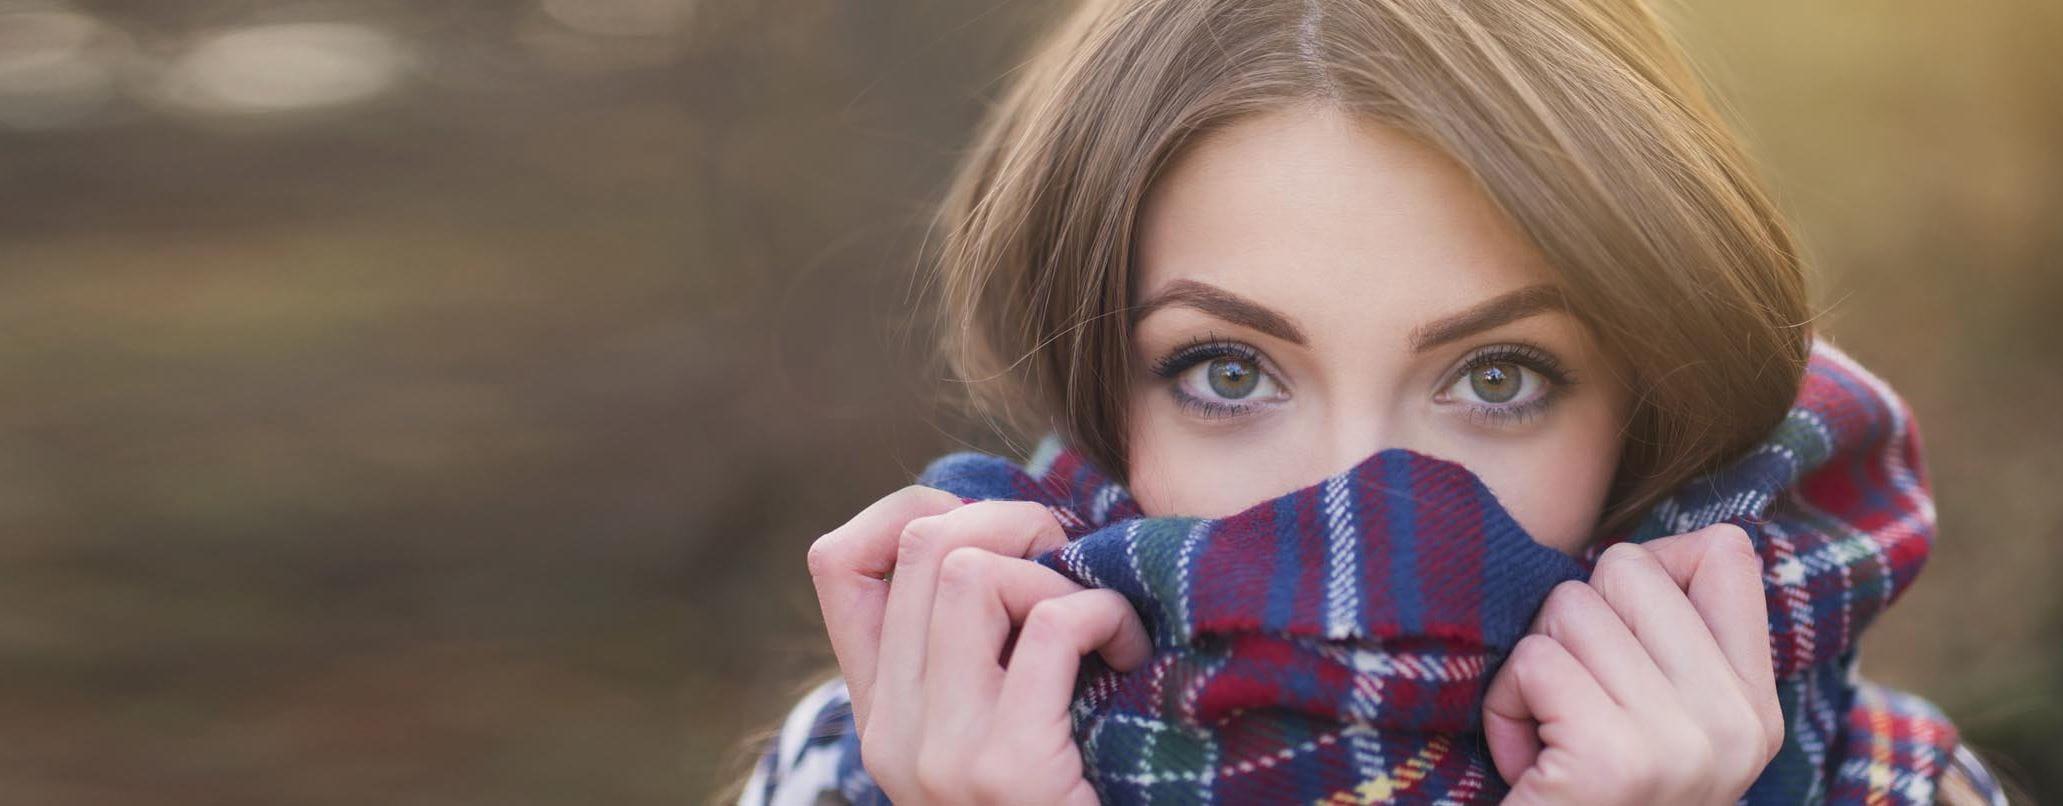 Augenbrauen selber färben: Anleitung und Tipps